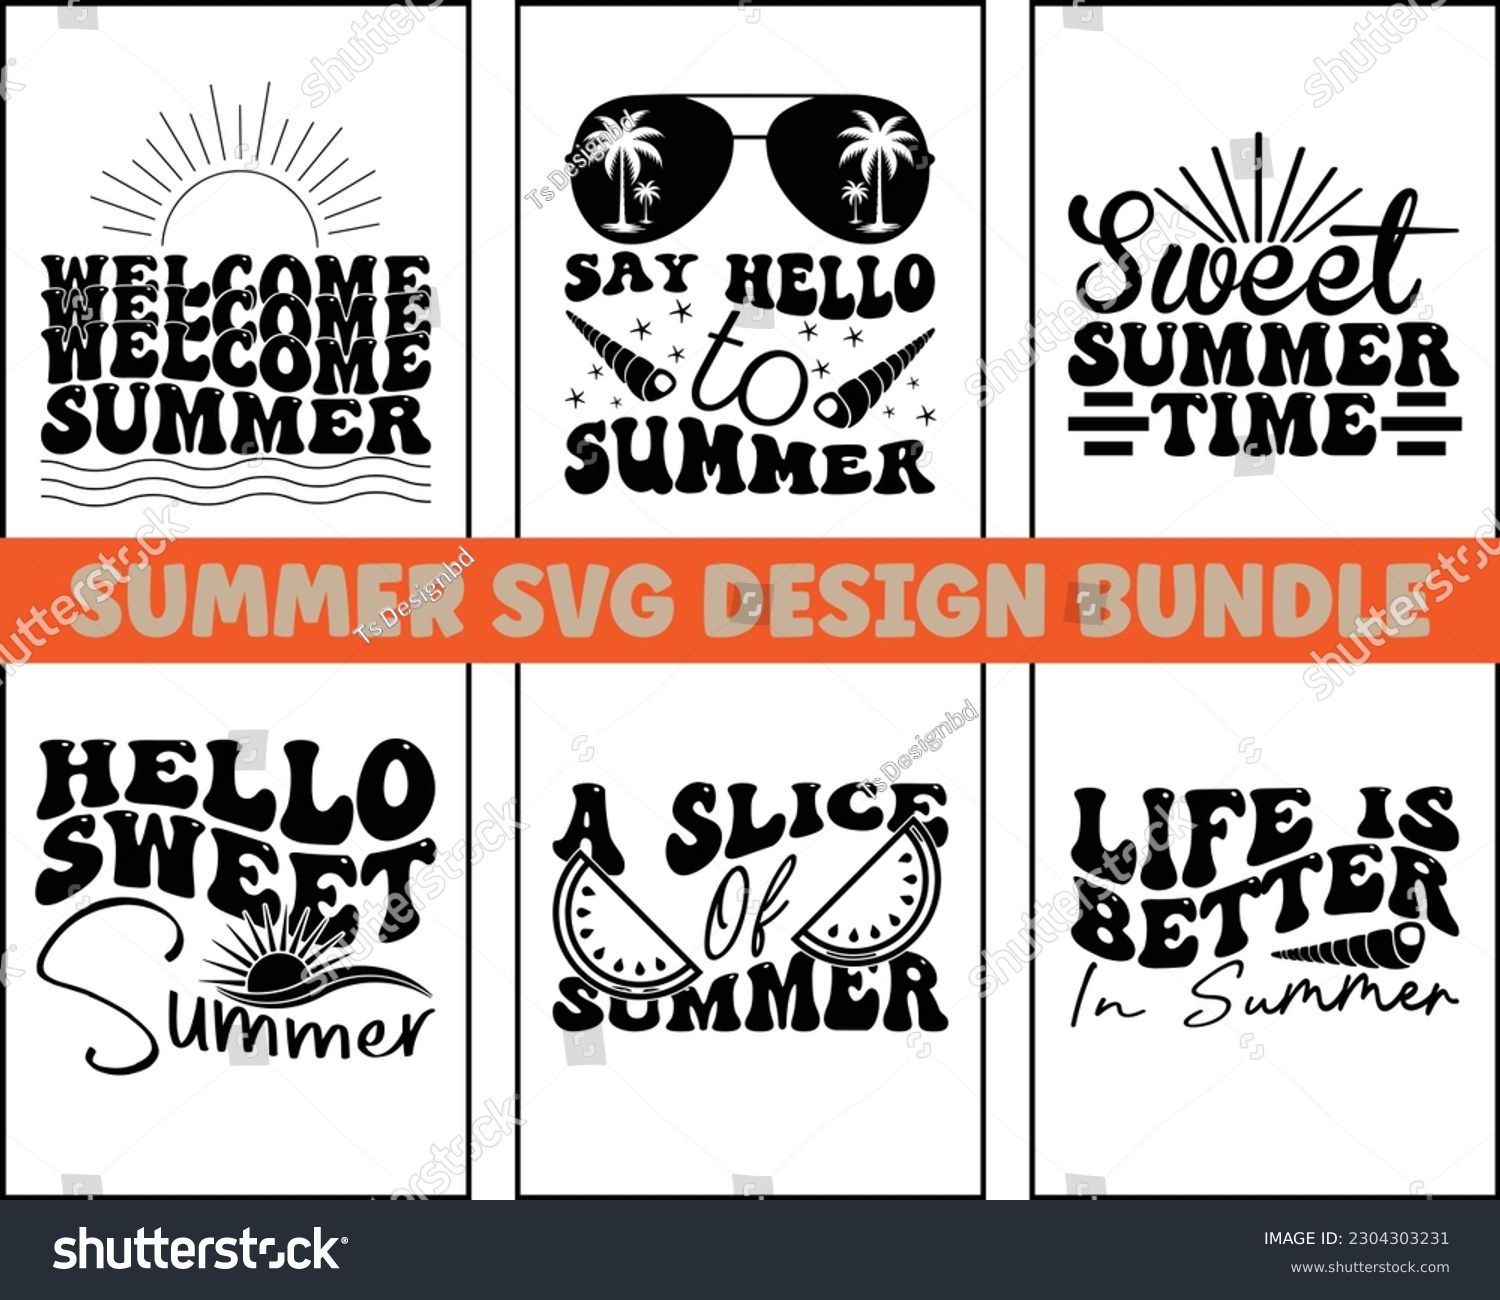 SVG of summer SVG design bundle Cut Files,Summer Quotes SVG Designs Bundle,Funny Summer quotes SVG cut files bundle,Hello Summer quotes t shirt designs bundle,Groovy Retro Svg Design Bundle svg